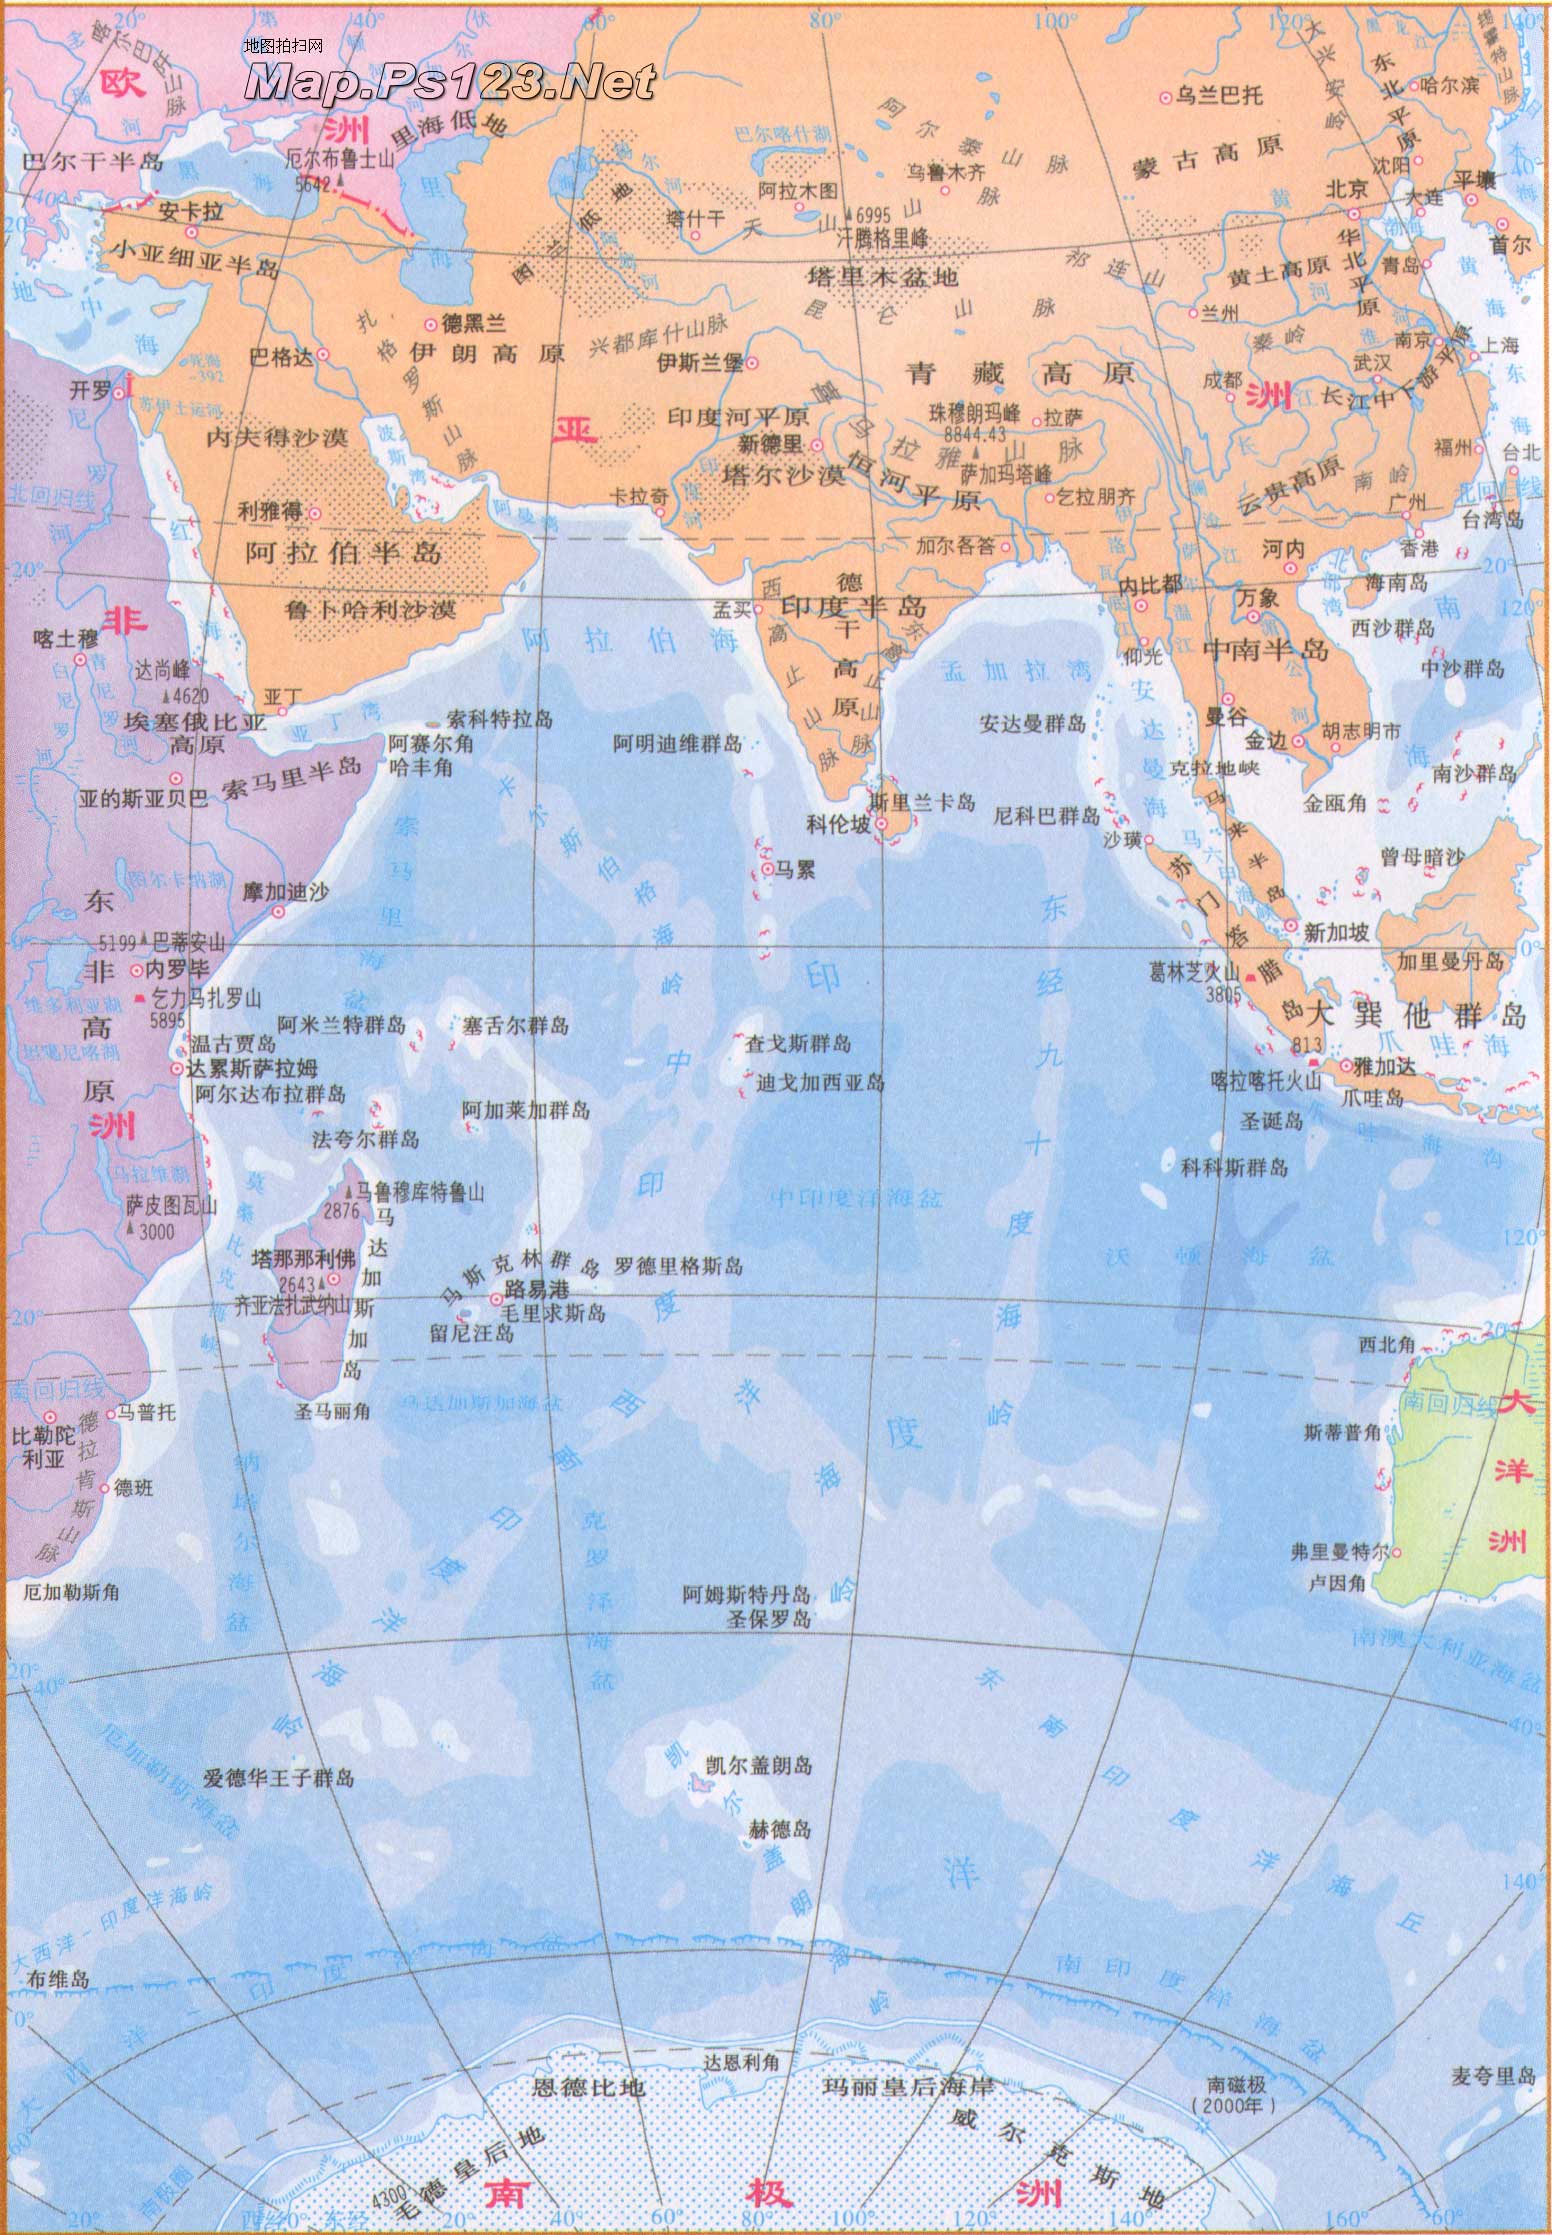 四大洋是哪四个，世界四大洋知识分析？